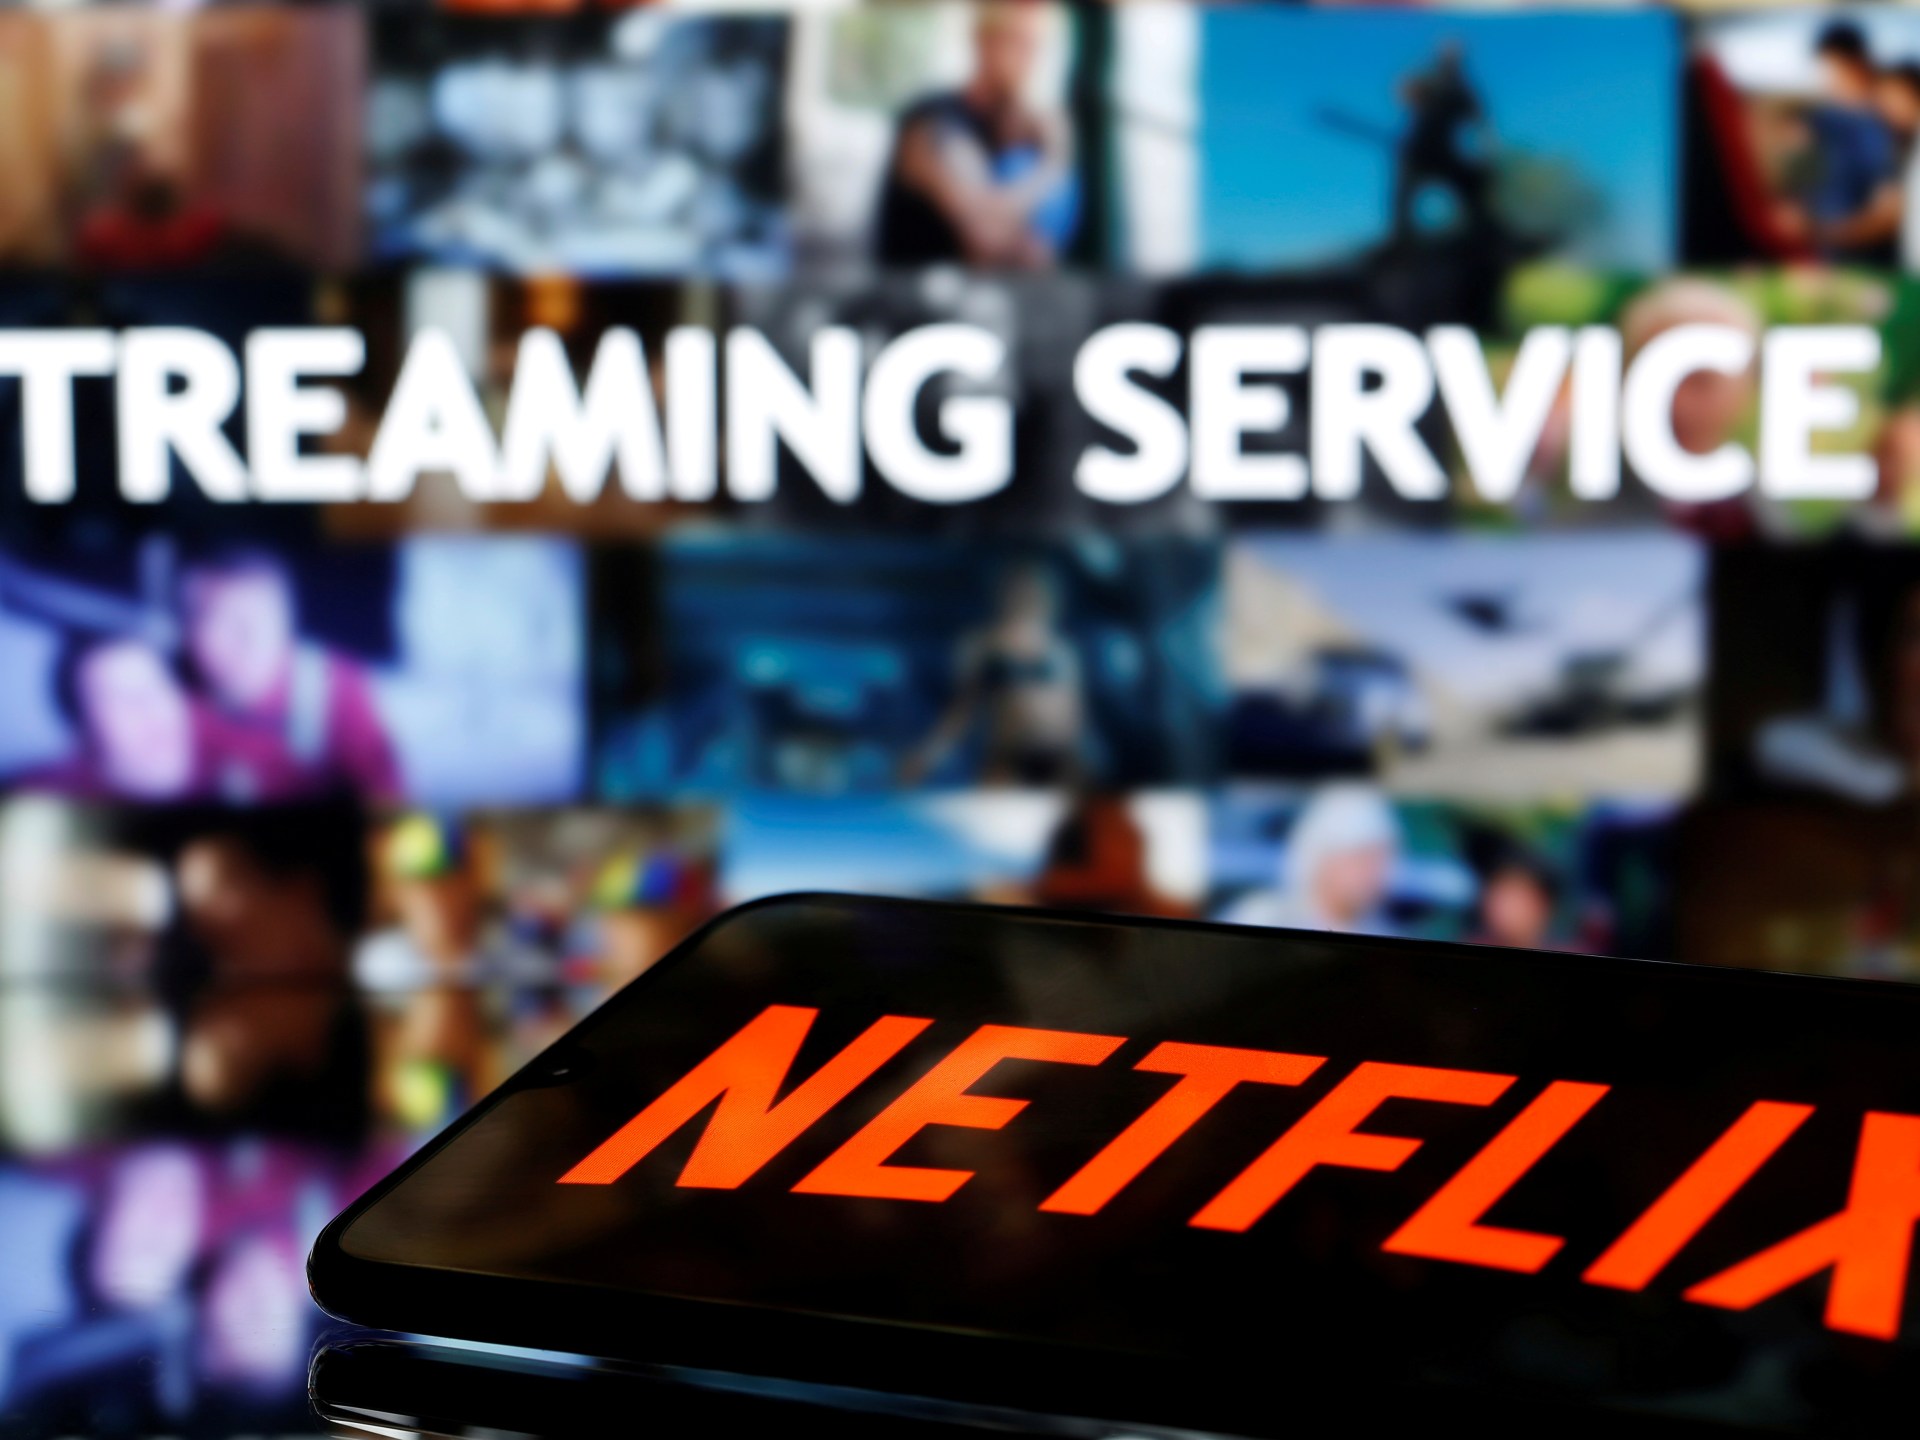 Gulf nations demand Netflix remove ‘offensive’ content | LGBTQ News